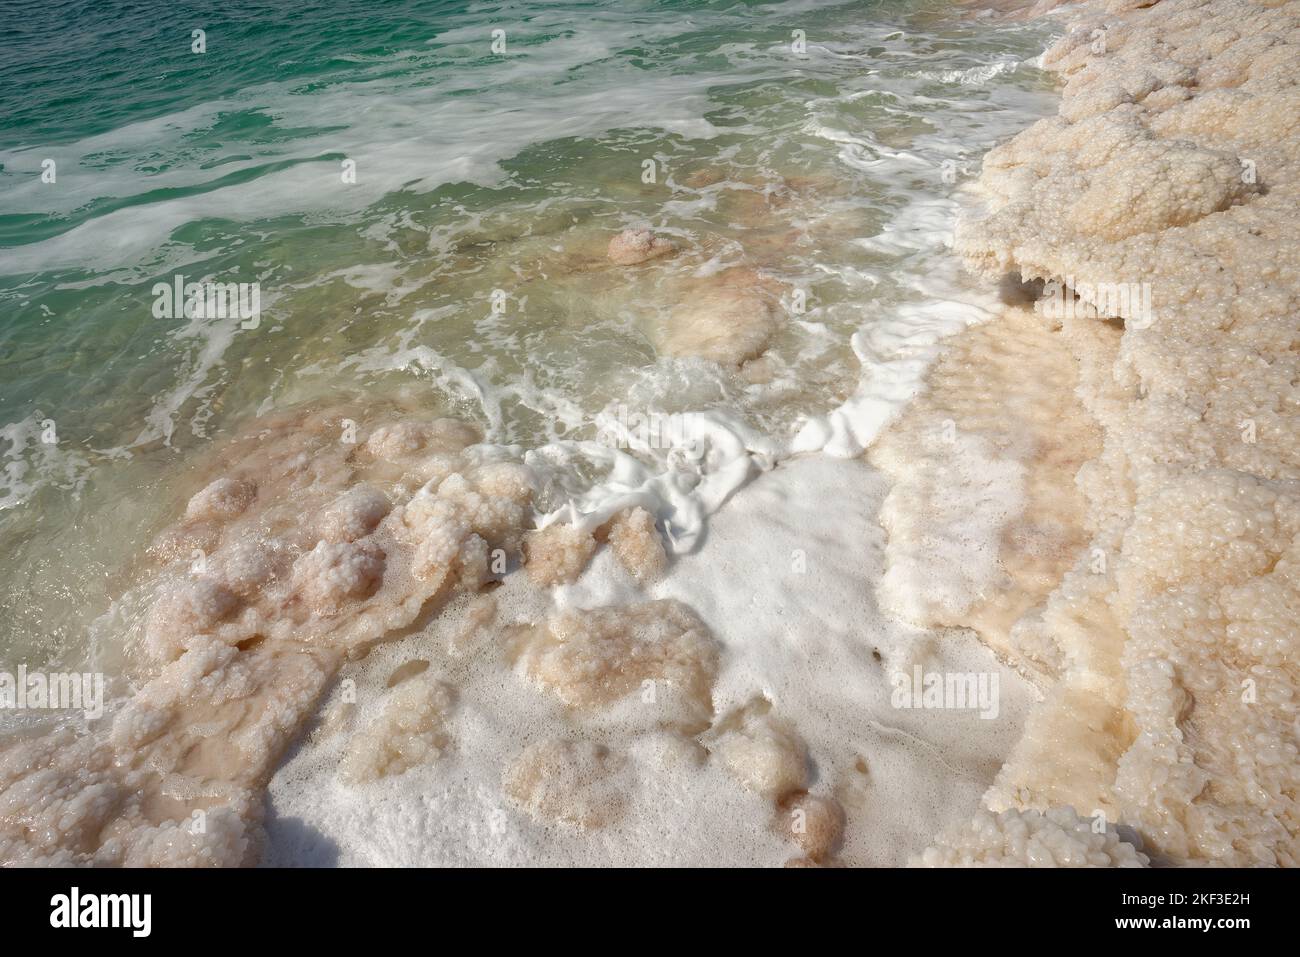 La mer Morte, Jordanie. Il n'existe rien de vivant dans la mer Morte. Plus de 400 mètres sous le niveau de la mer. Banque D'Images